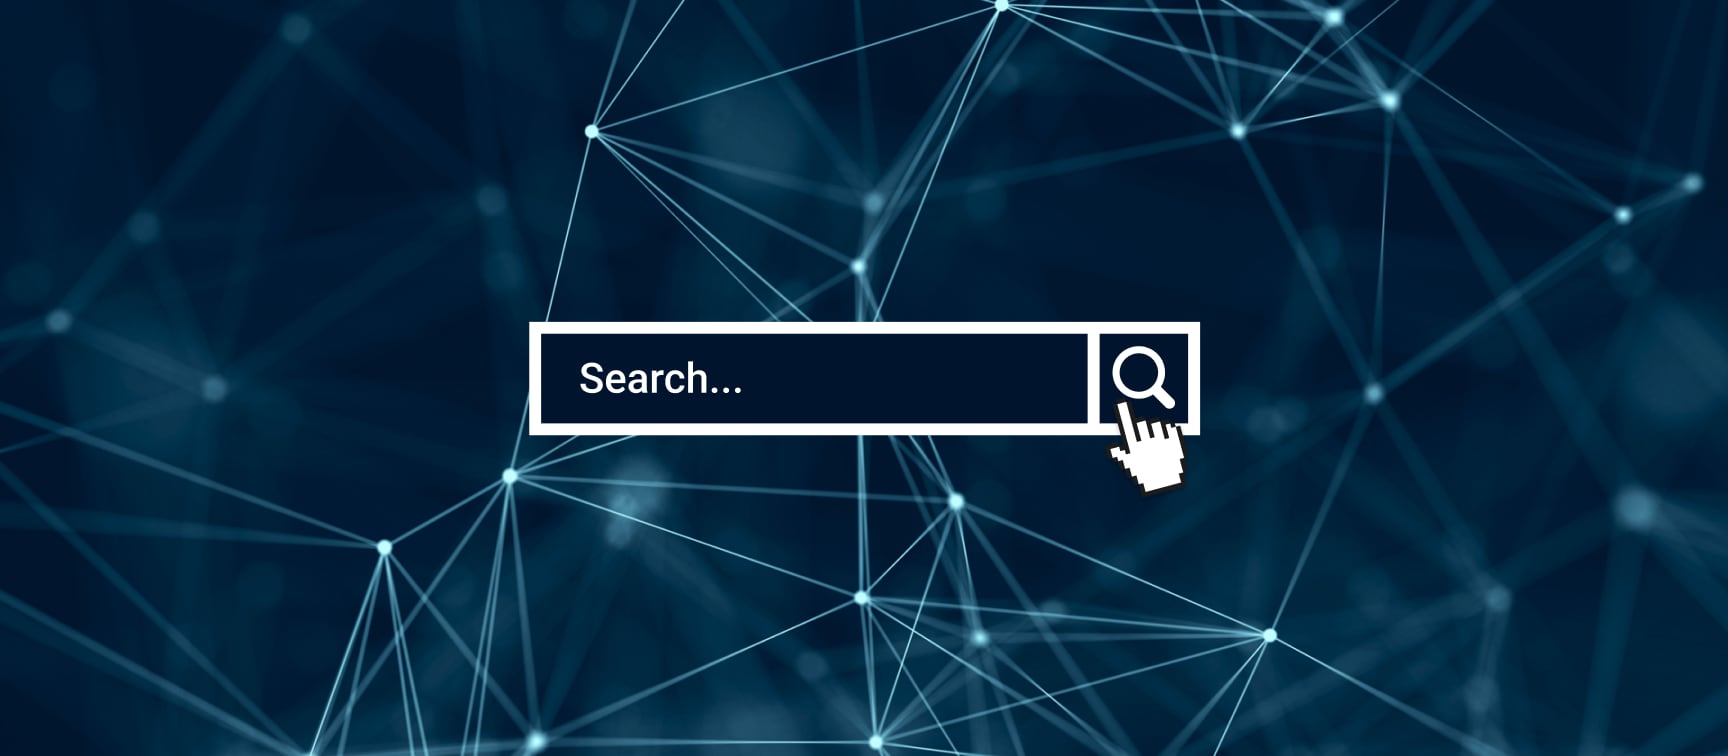 Search engine darknet mega скачать tor browser 4 на русском бесплатно mega